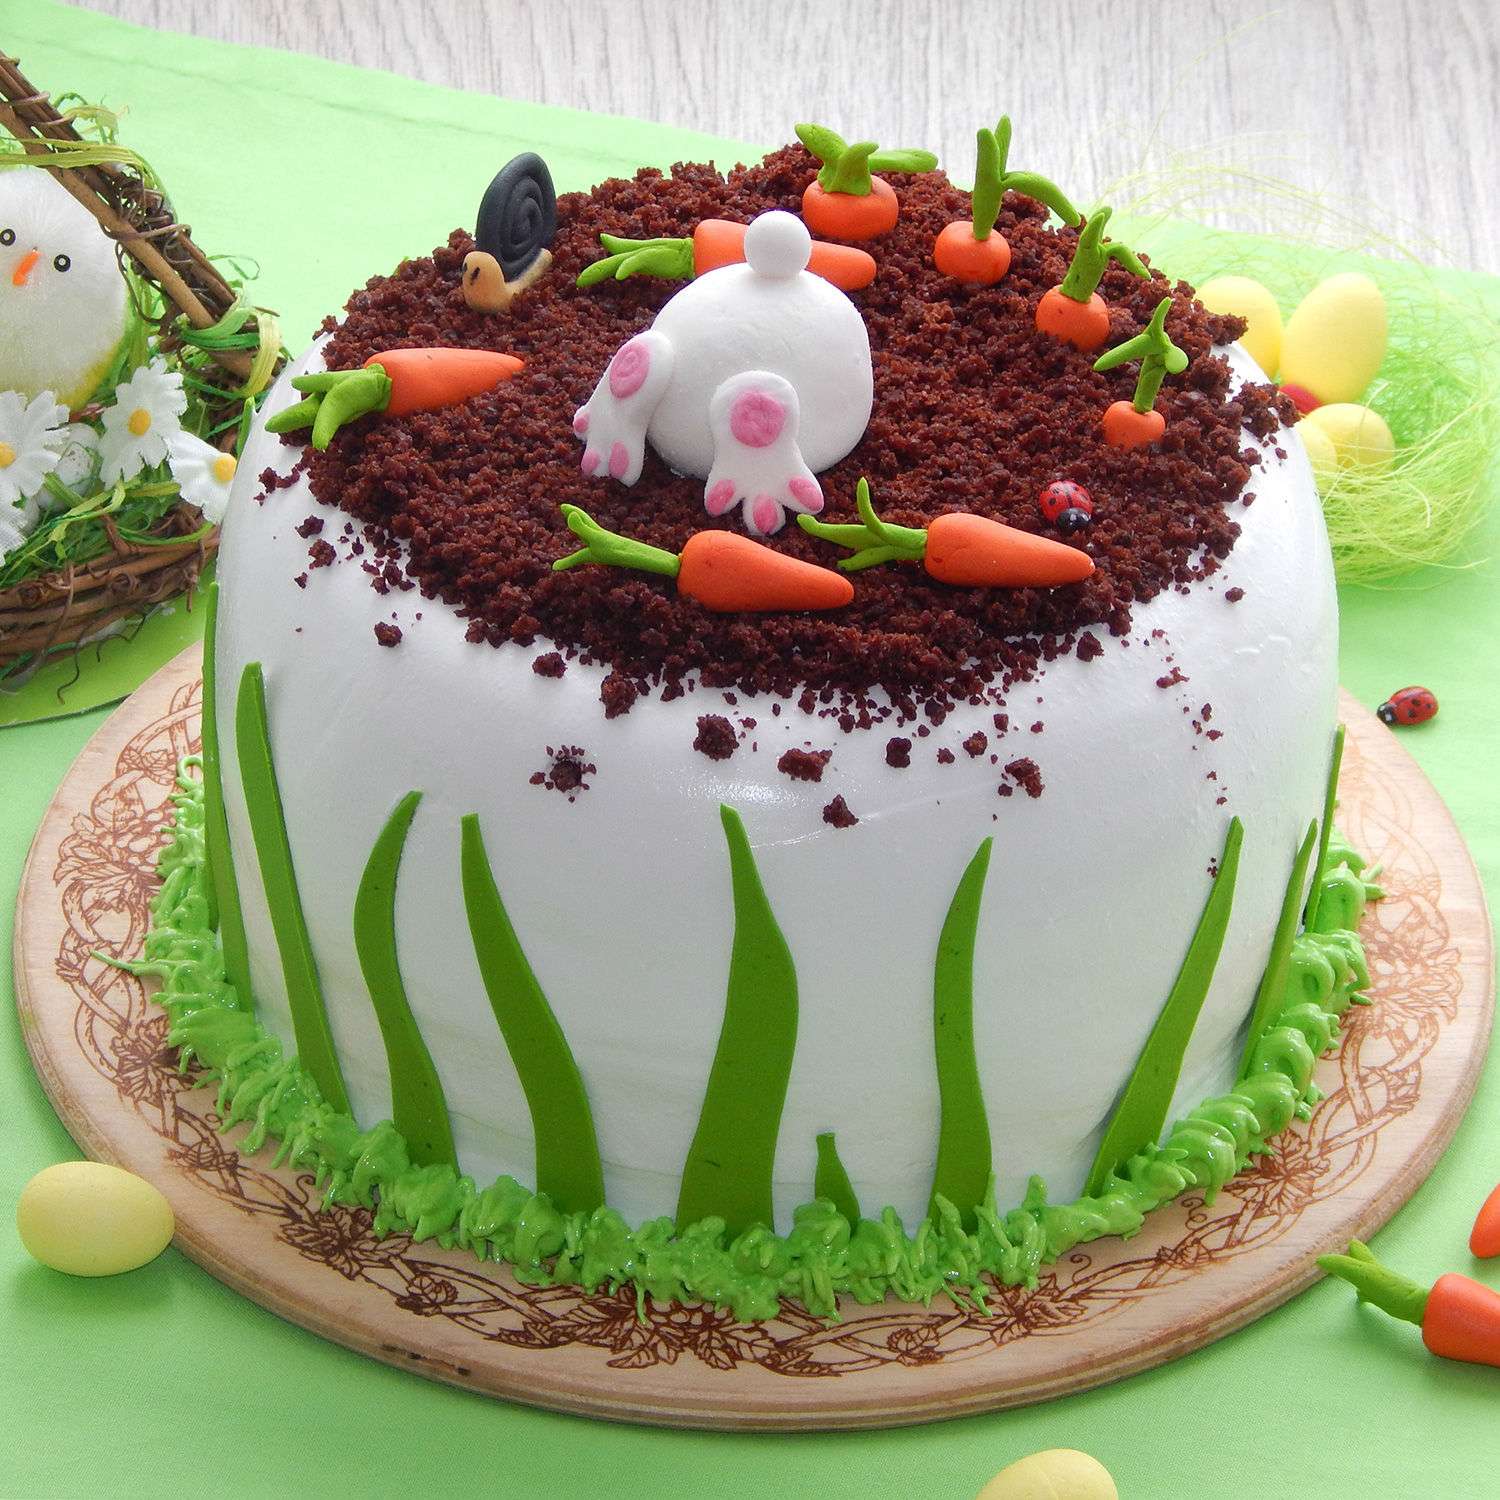 A super cute Bunny theme 1st birthday cake ✨🐰 #thebakersden #bunnycake  #bunnytheme #1stbirthday #birthdaycake #1stbirthdaycake #ca... | Instagram